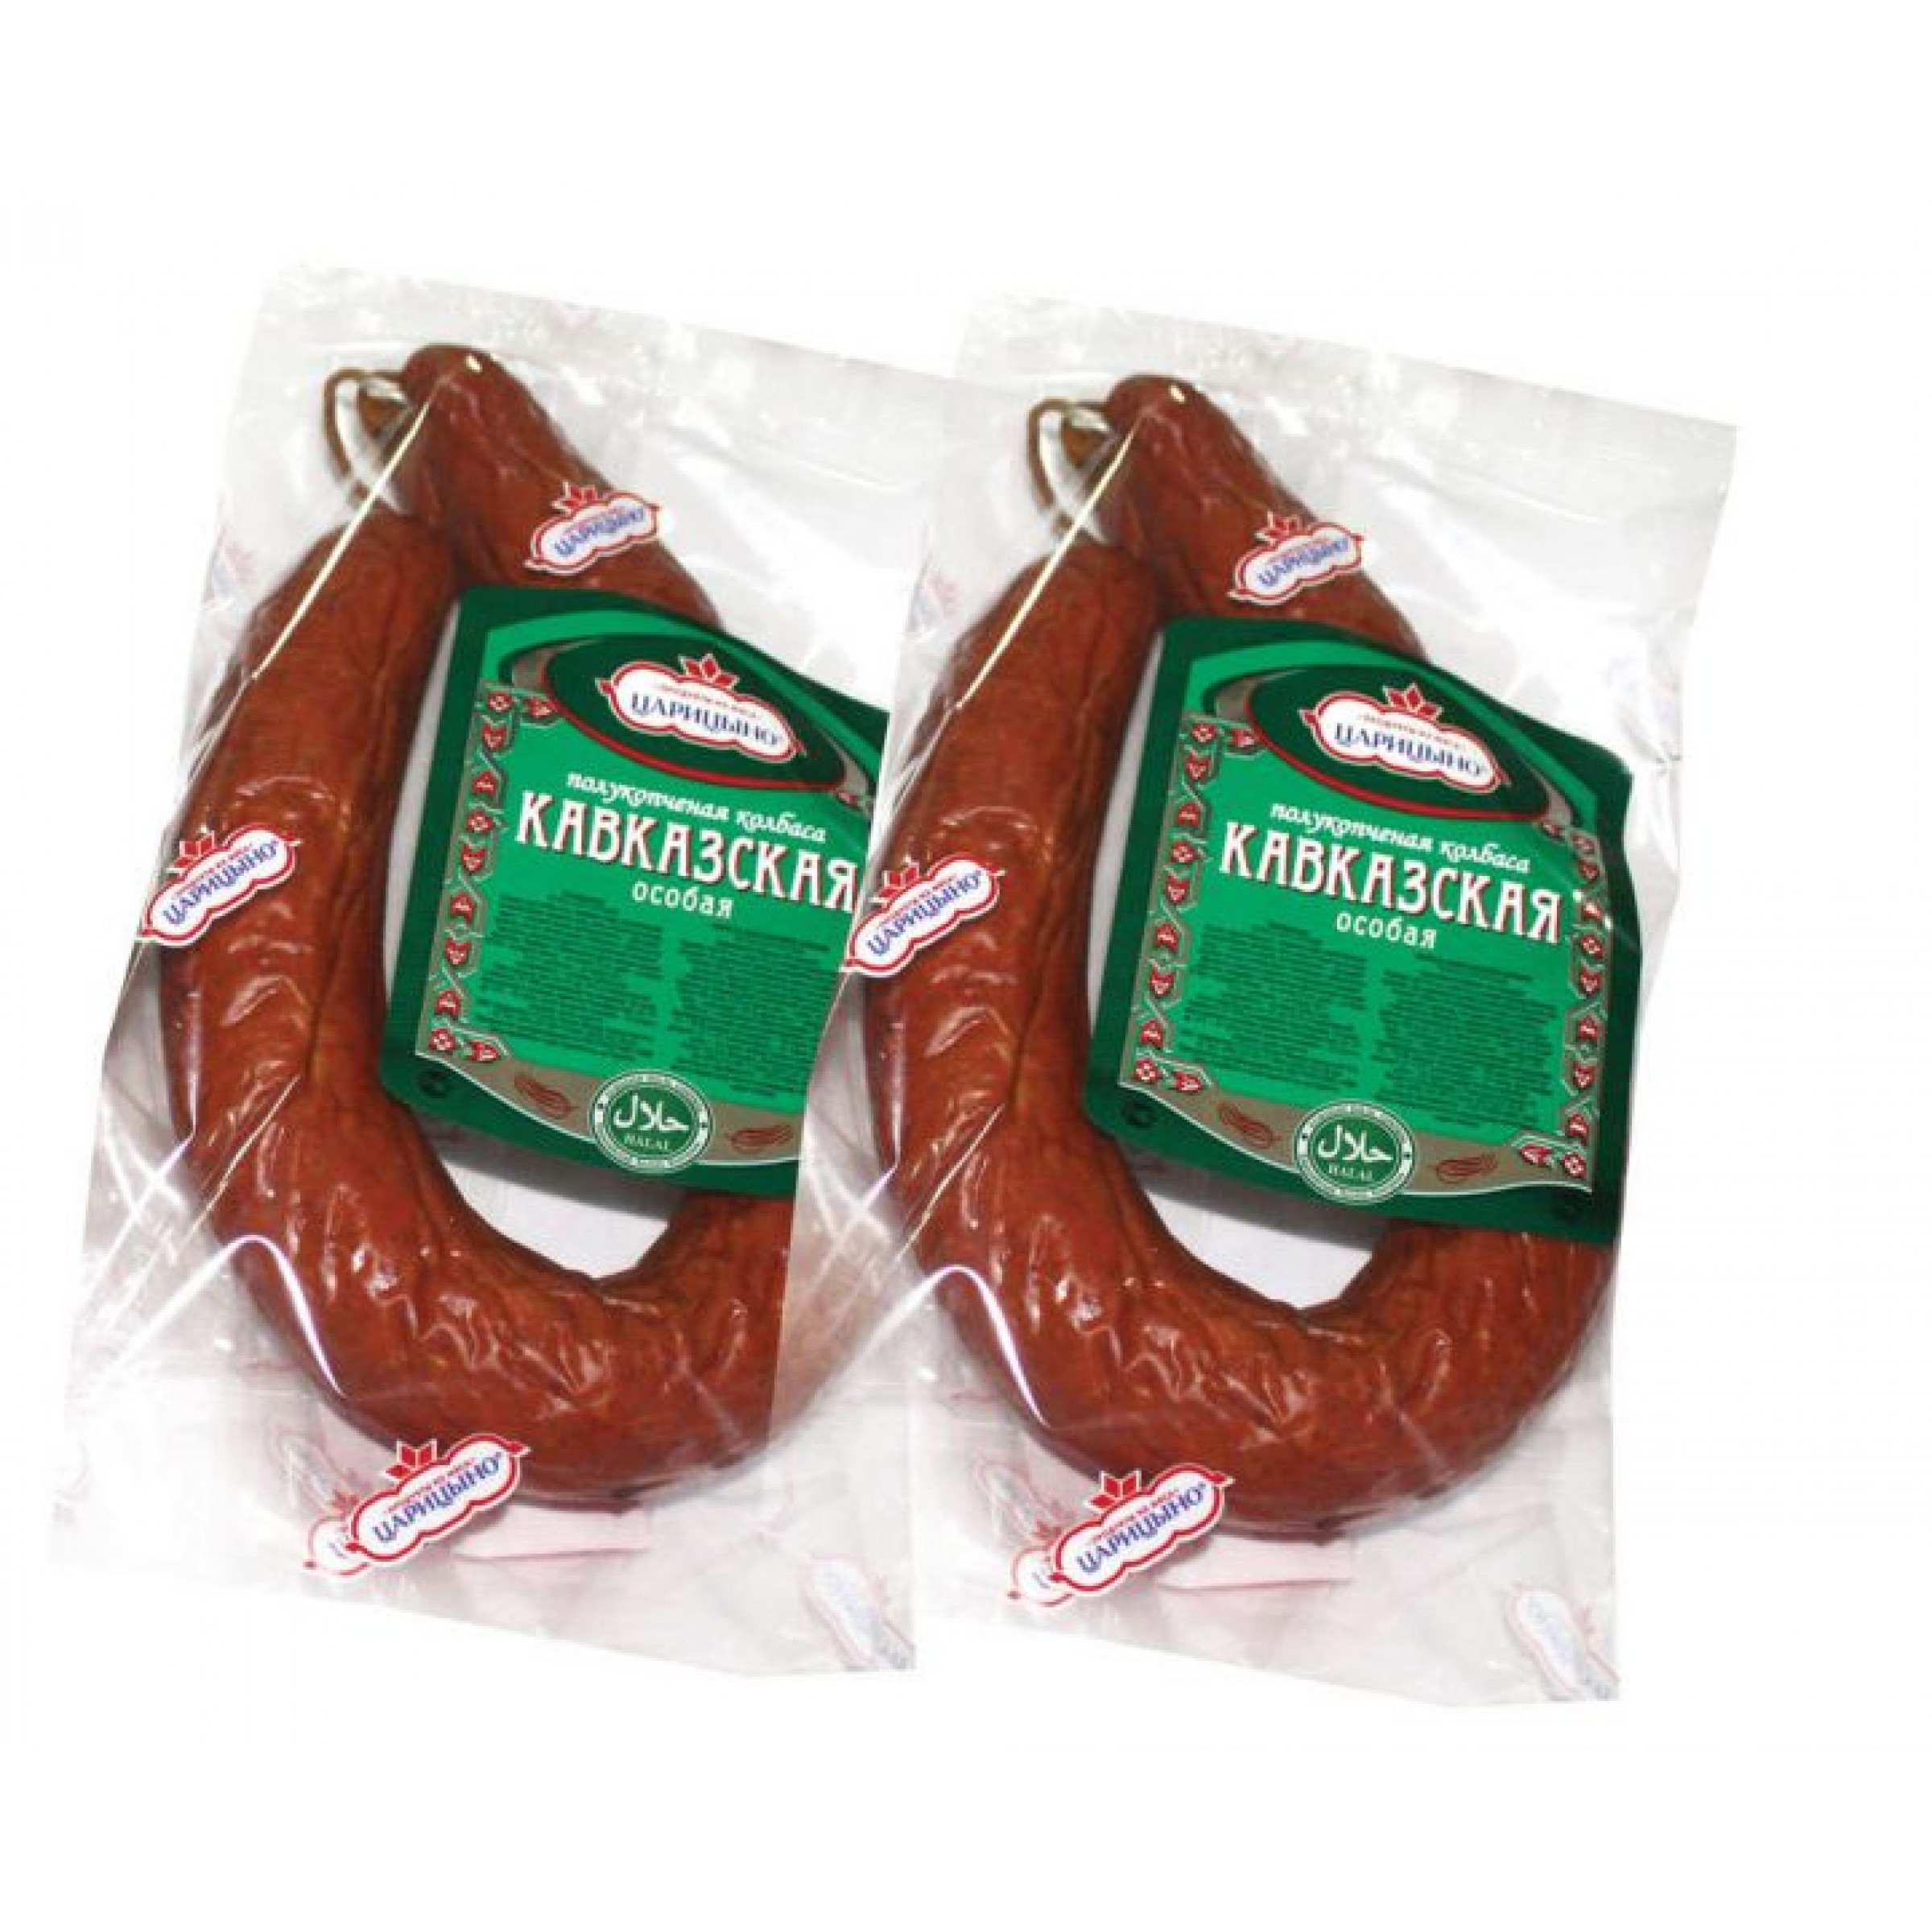 Полукопченая колбаса Кавказская особая Царицыно (средний вес: 3000 г)